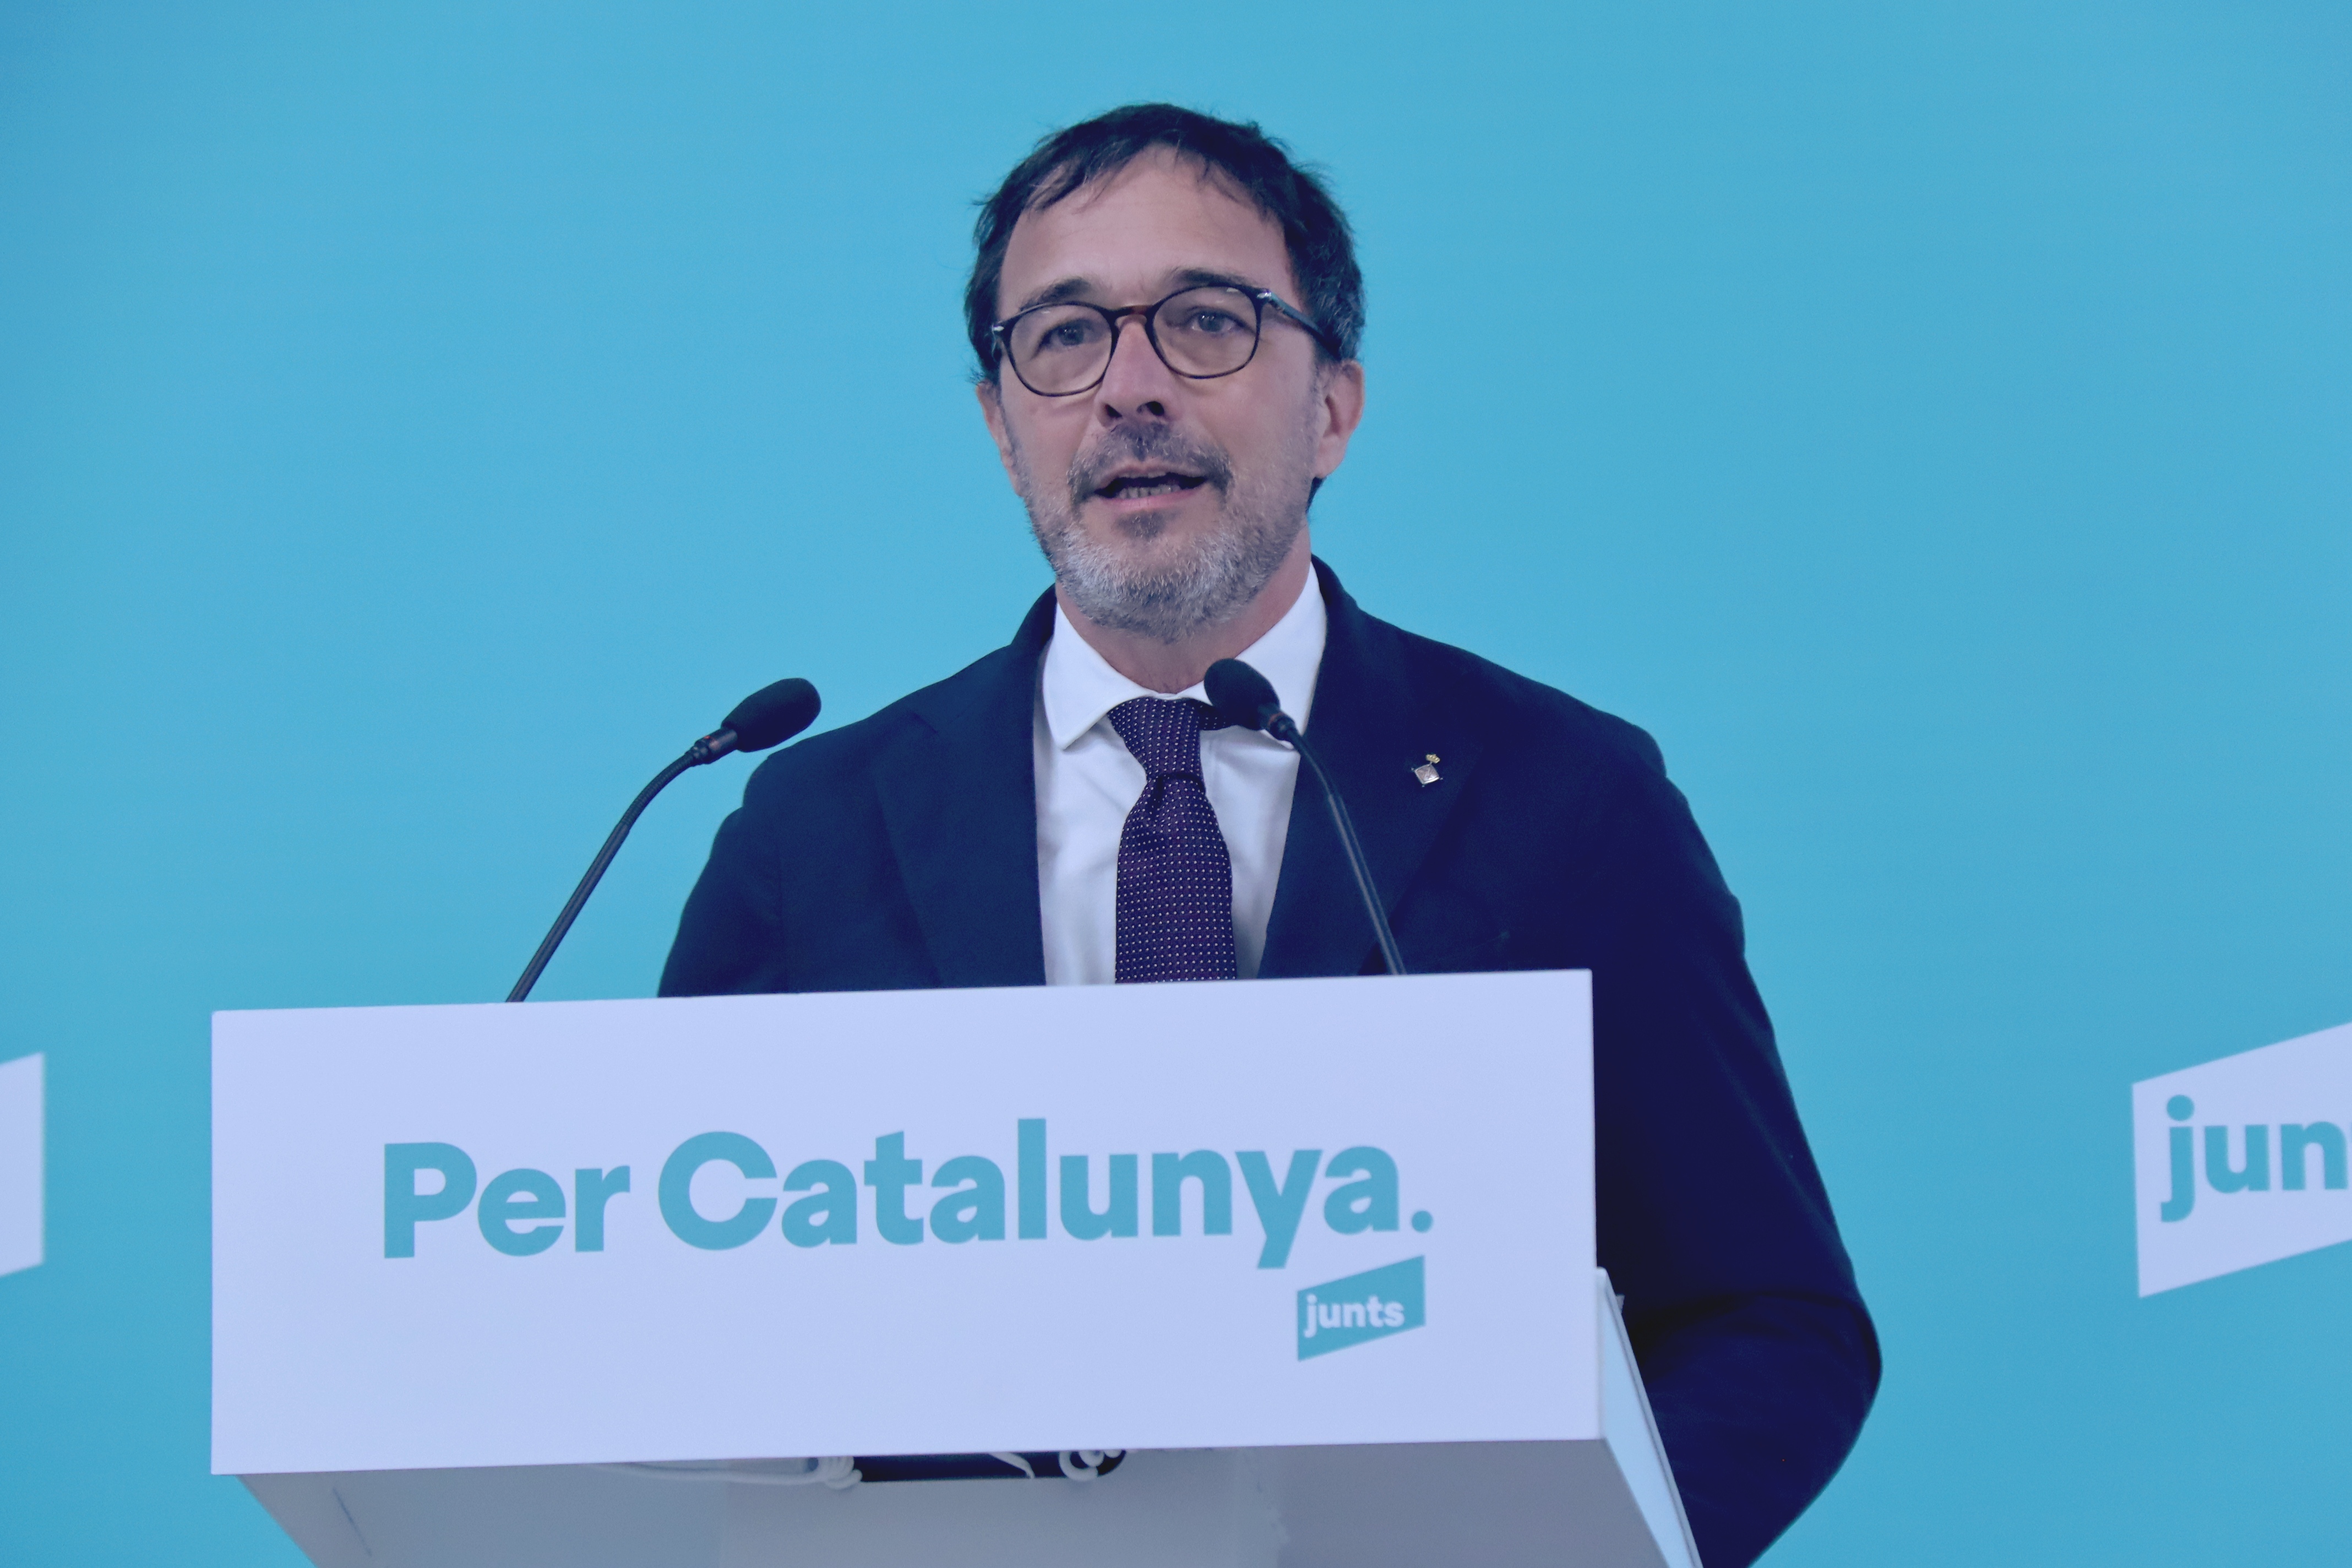 Junts reclama a l'Estat més esforços per l'oficialitat del català a la UE: "No pot trigar gaire més"